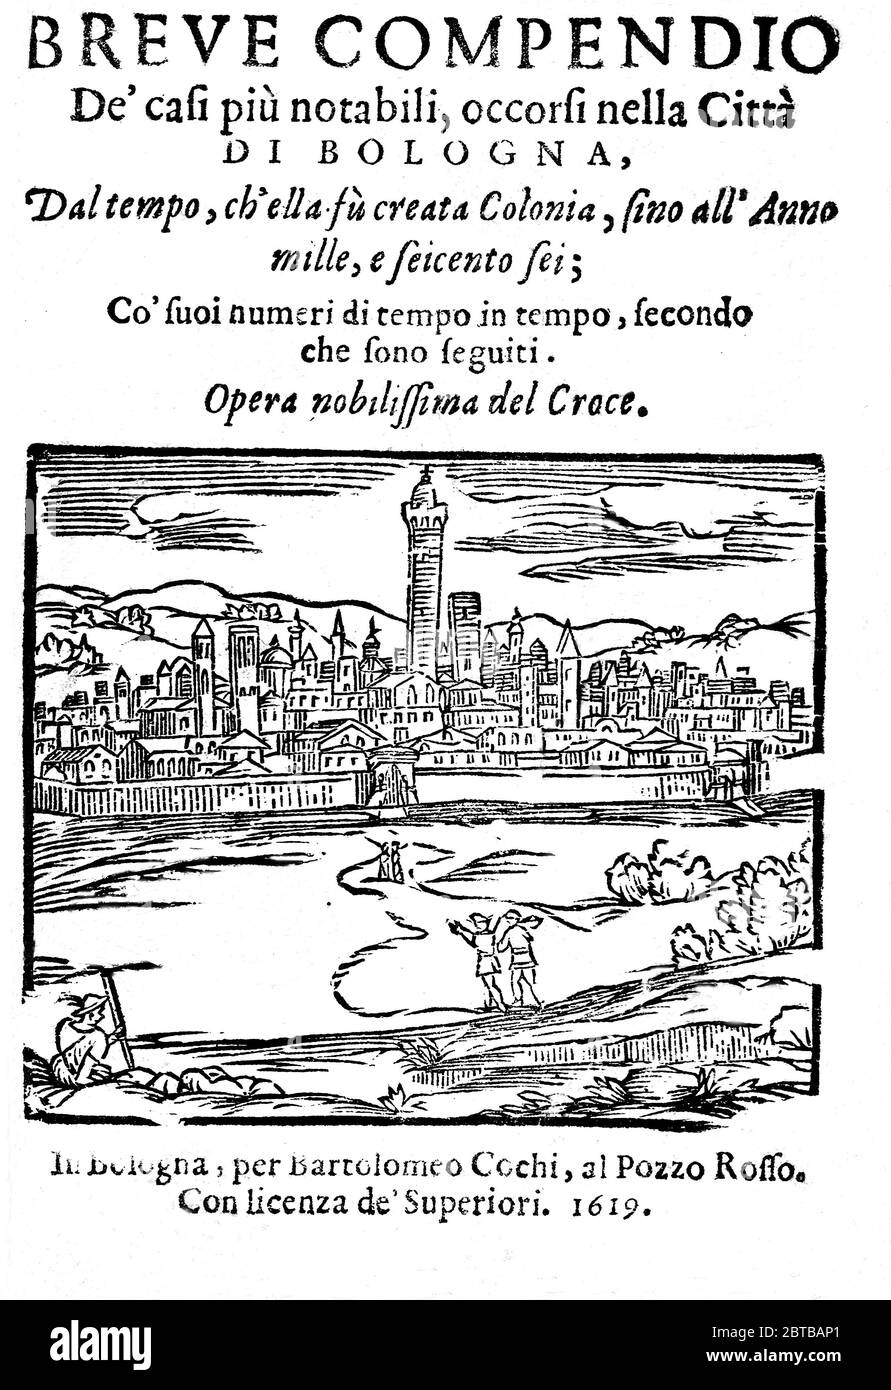 1619, Bologne , ITALIE : poète italien , astrologue , acteur et producteur , Cantastoria et écrivain énigma GIULIO CESARE CROCE ( 1550 - 1609 ). Auteur de la série sur BERTOLDO , BERTOLDINO et CACASENNO . Première page du livre BREVE COMPENDIO DE' CASI PIU' NOTABILI OCCRSI NELLA CITTA' DI BOLOGNA de G.C. Croce, imprimé à Bologne , 1619 .- POETI ITALIANI - '500 - 500 - 500 - CANTASTORIE - ATTORE - TEATRO - THÉÂTRE - SCRITTORE - LETTERATURA - LITTÉRATURE - LETTERATO - POETA - POESIA - POÉSIE - ASTROLOGO - ASTROLOLOLOLOGIA - ASTROLOGIE - INCISIONE - PORTRAIT - RITTO - ENIGMISTA - LINGUA - ITALIEN - ITALIEN - ITALIEN - ITALIEN - ITALIEN - ITALIEN - ITALIEN - ITALIEN - ITALIEN - ITALIEN - ITALIEN - ITALIEN Banque D'Images